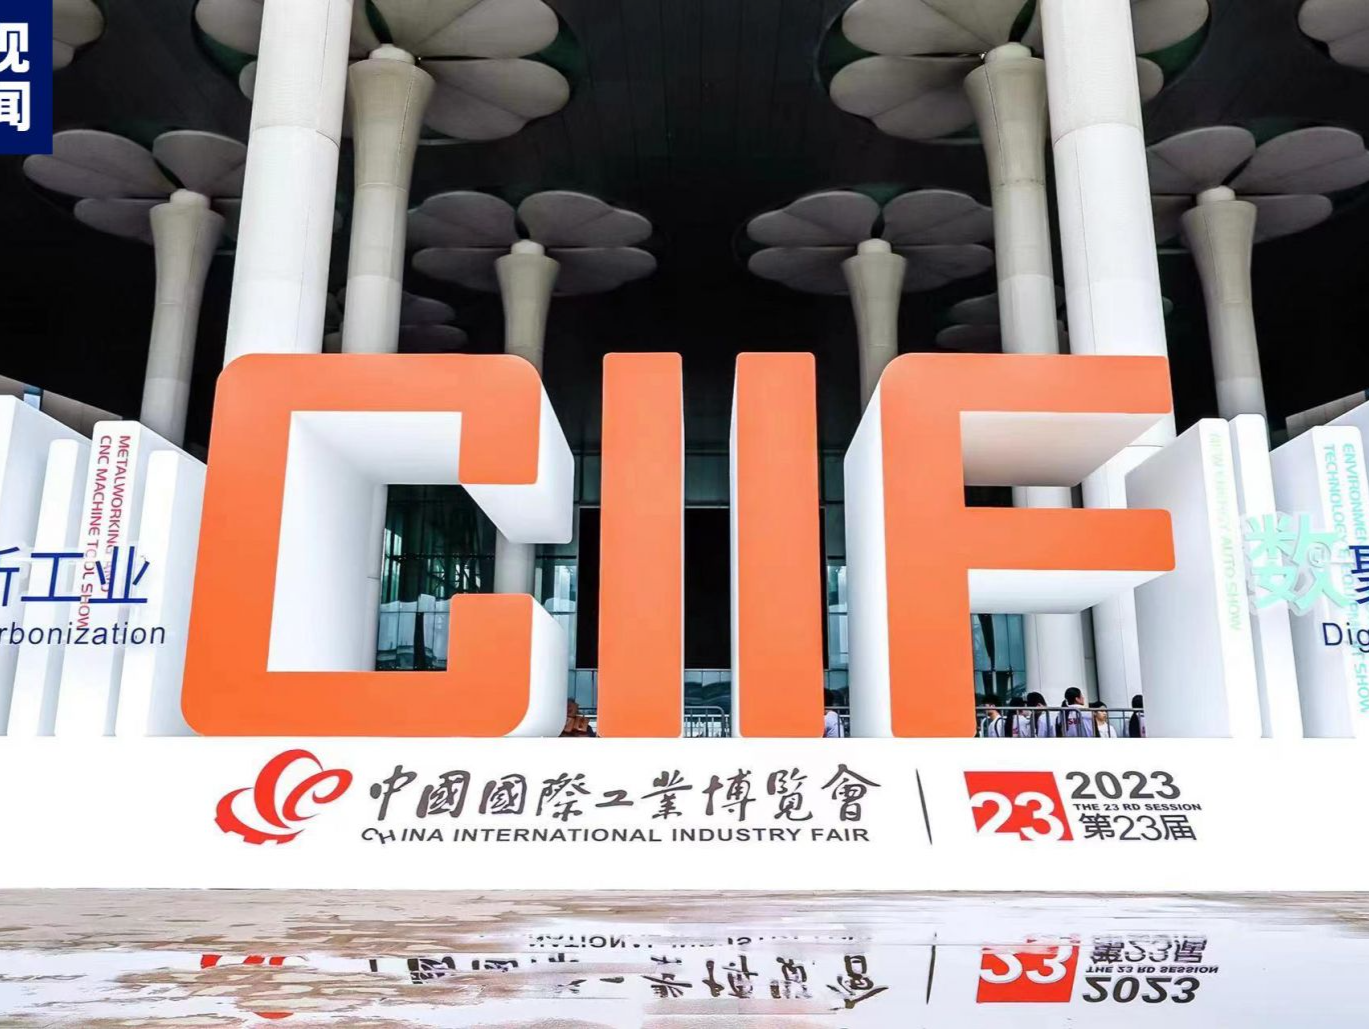 第二十三届中国国际工业博览会今天在上海闭幕